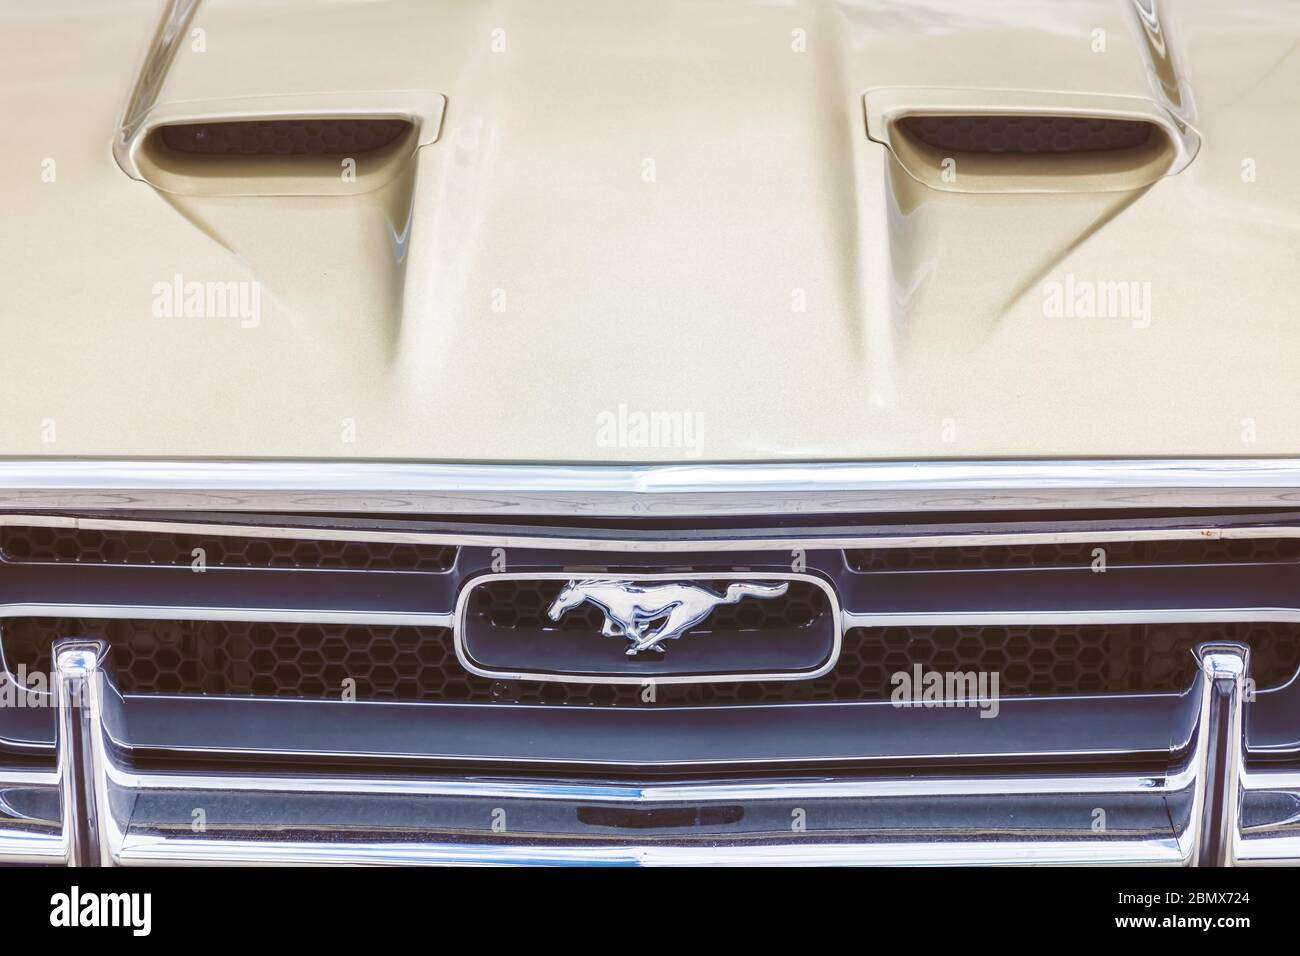 Drempt, Niederlande - 27. März 2020: Nahaufnahme der Front eines amerikanischen Ford Mustang in Drempt, Niederlande Stockfoto